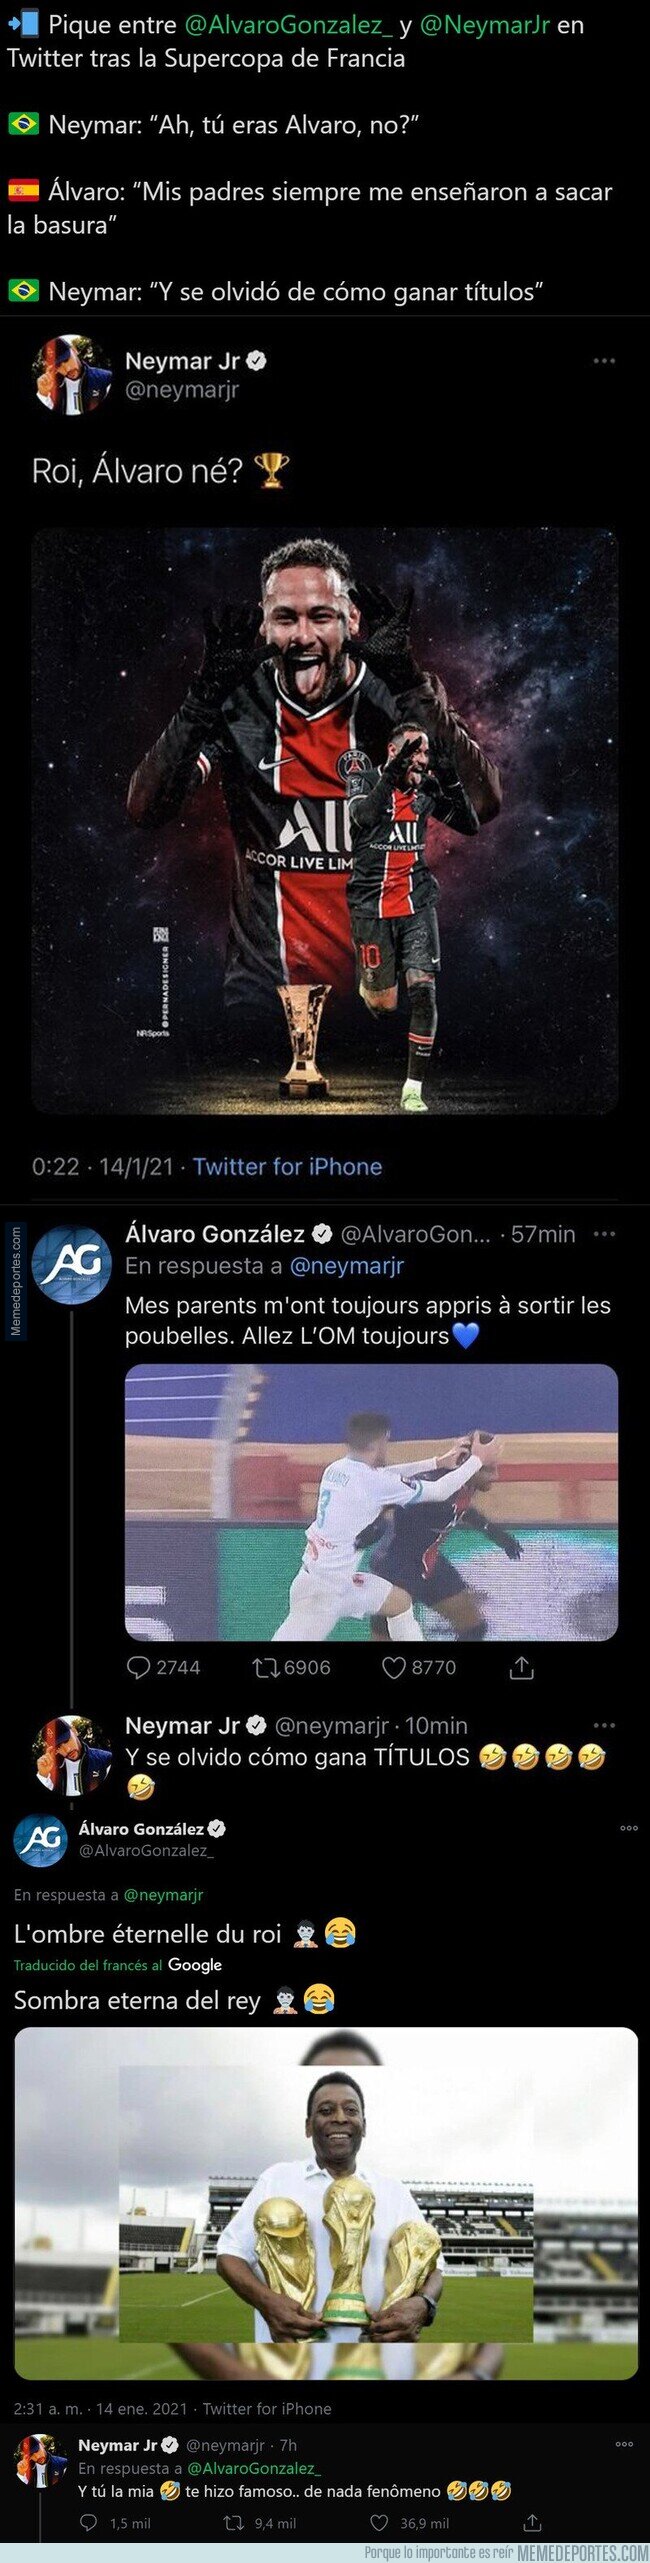 1125130 - Neymar y Álvaro González se enzarzan muy fuerte en Twitter tras la victoria del PSG al OM en la Supercopa